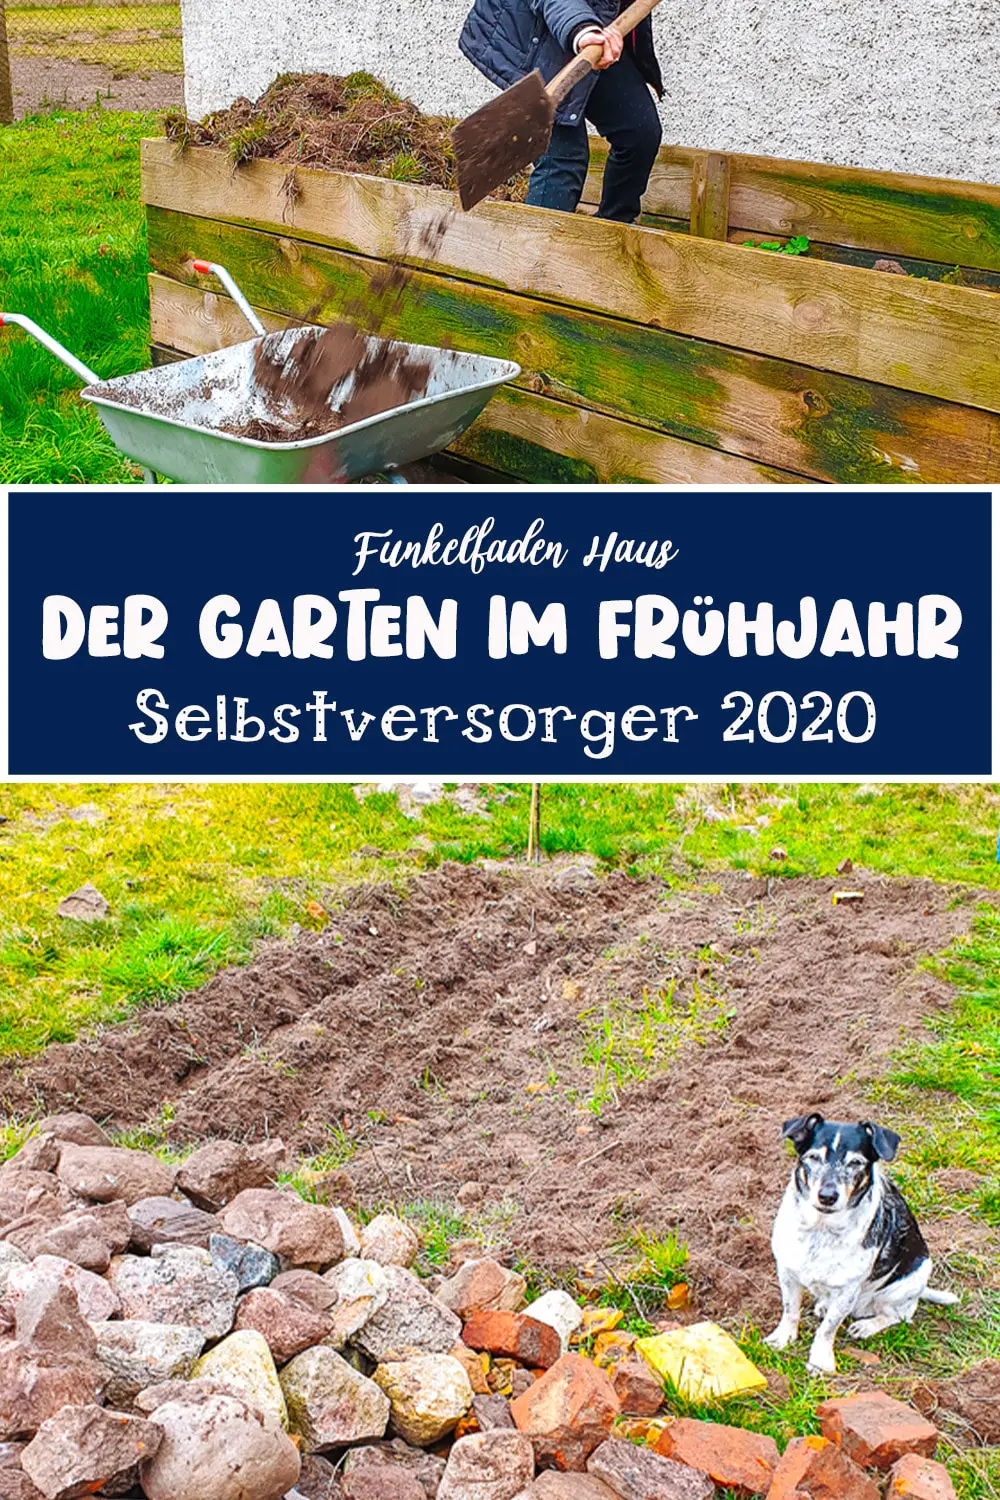 Erste Gartenarbeiten im Frühjahr 2020